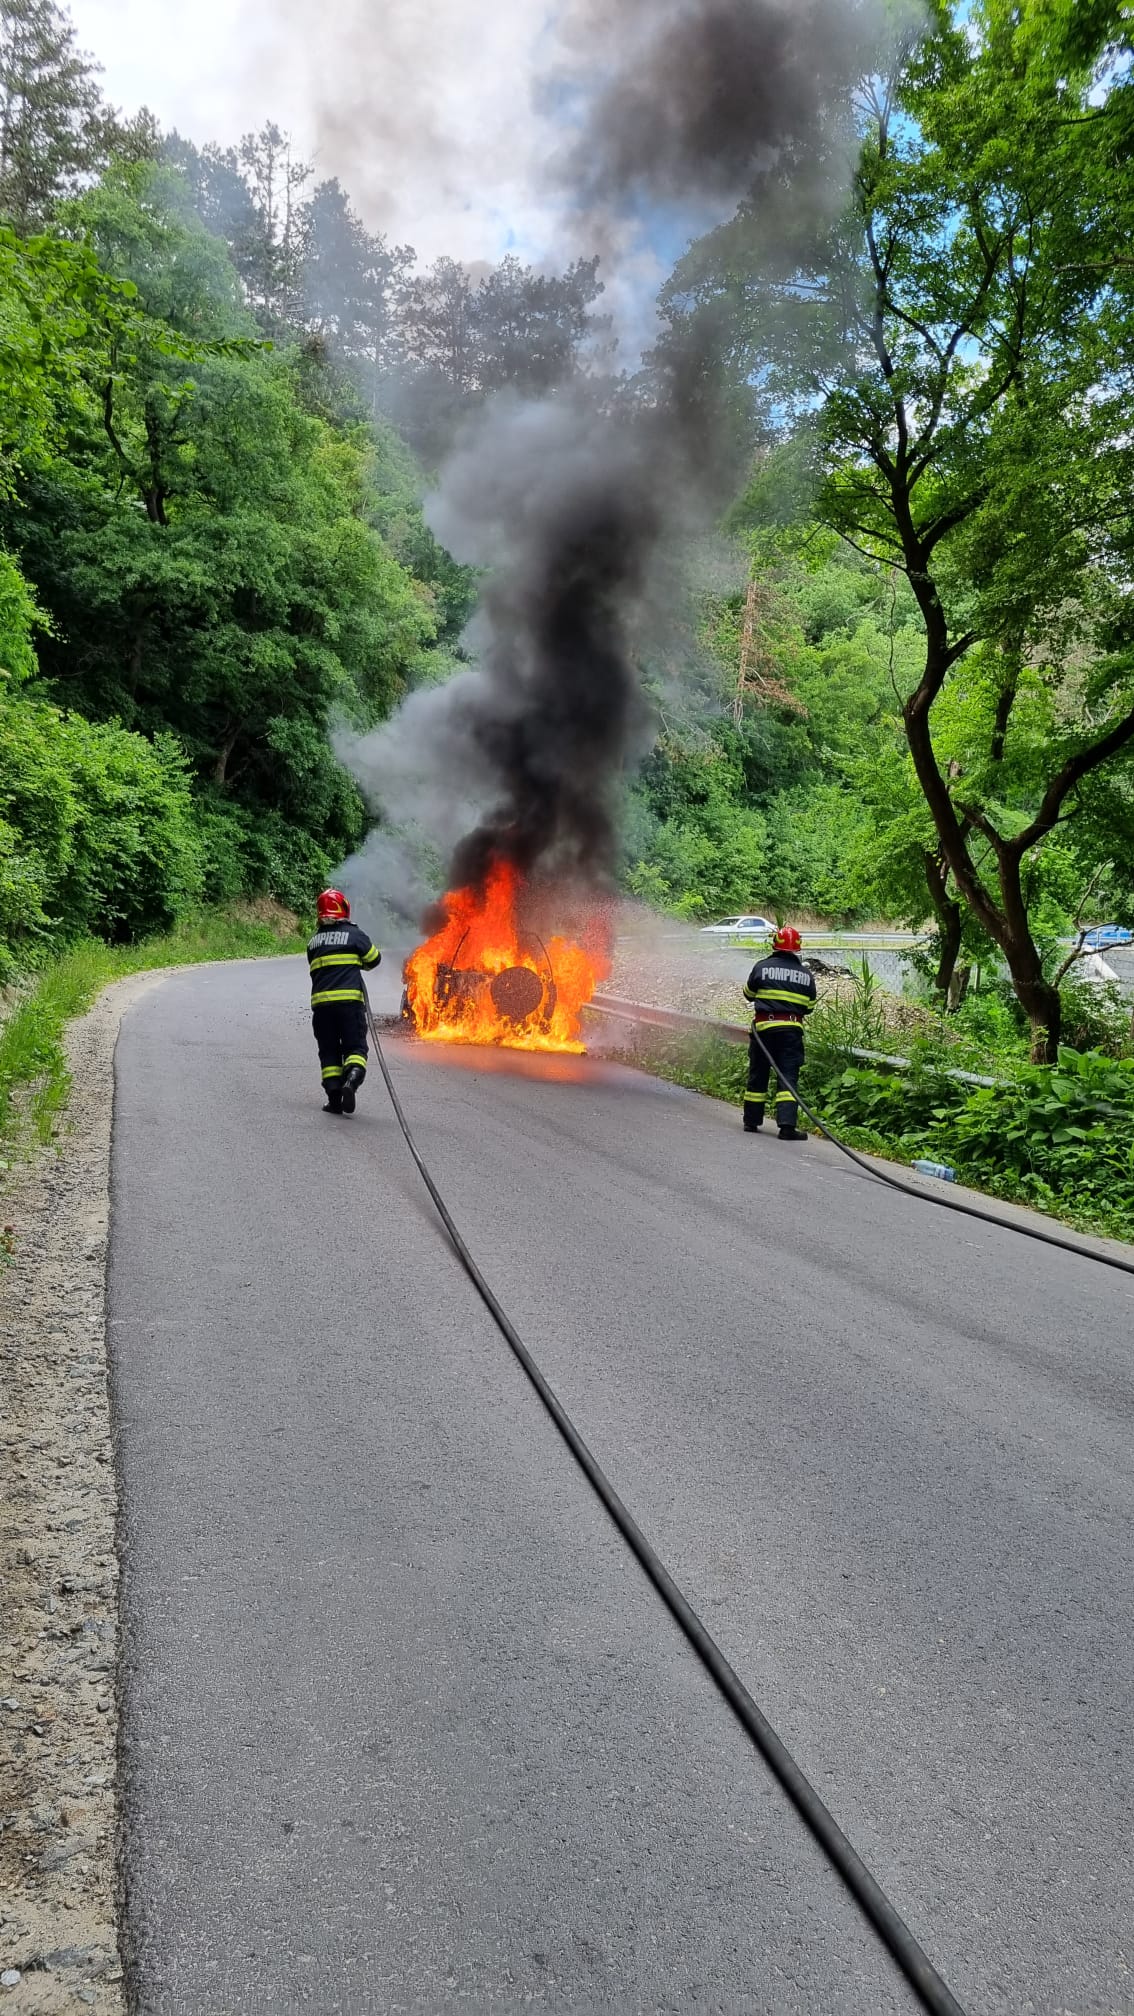 VIDEO| Incendiu la o mașină aflată în mers, între Șeica Mare și Șeica Mică